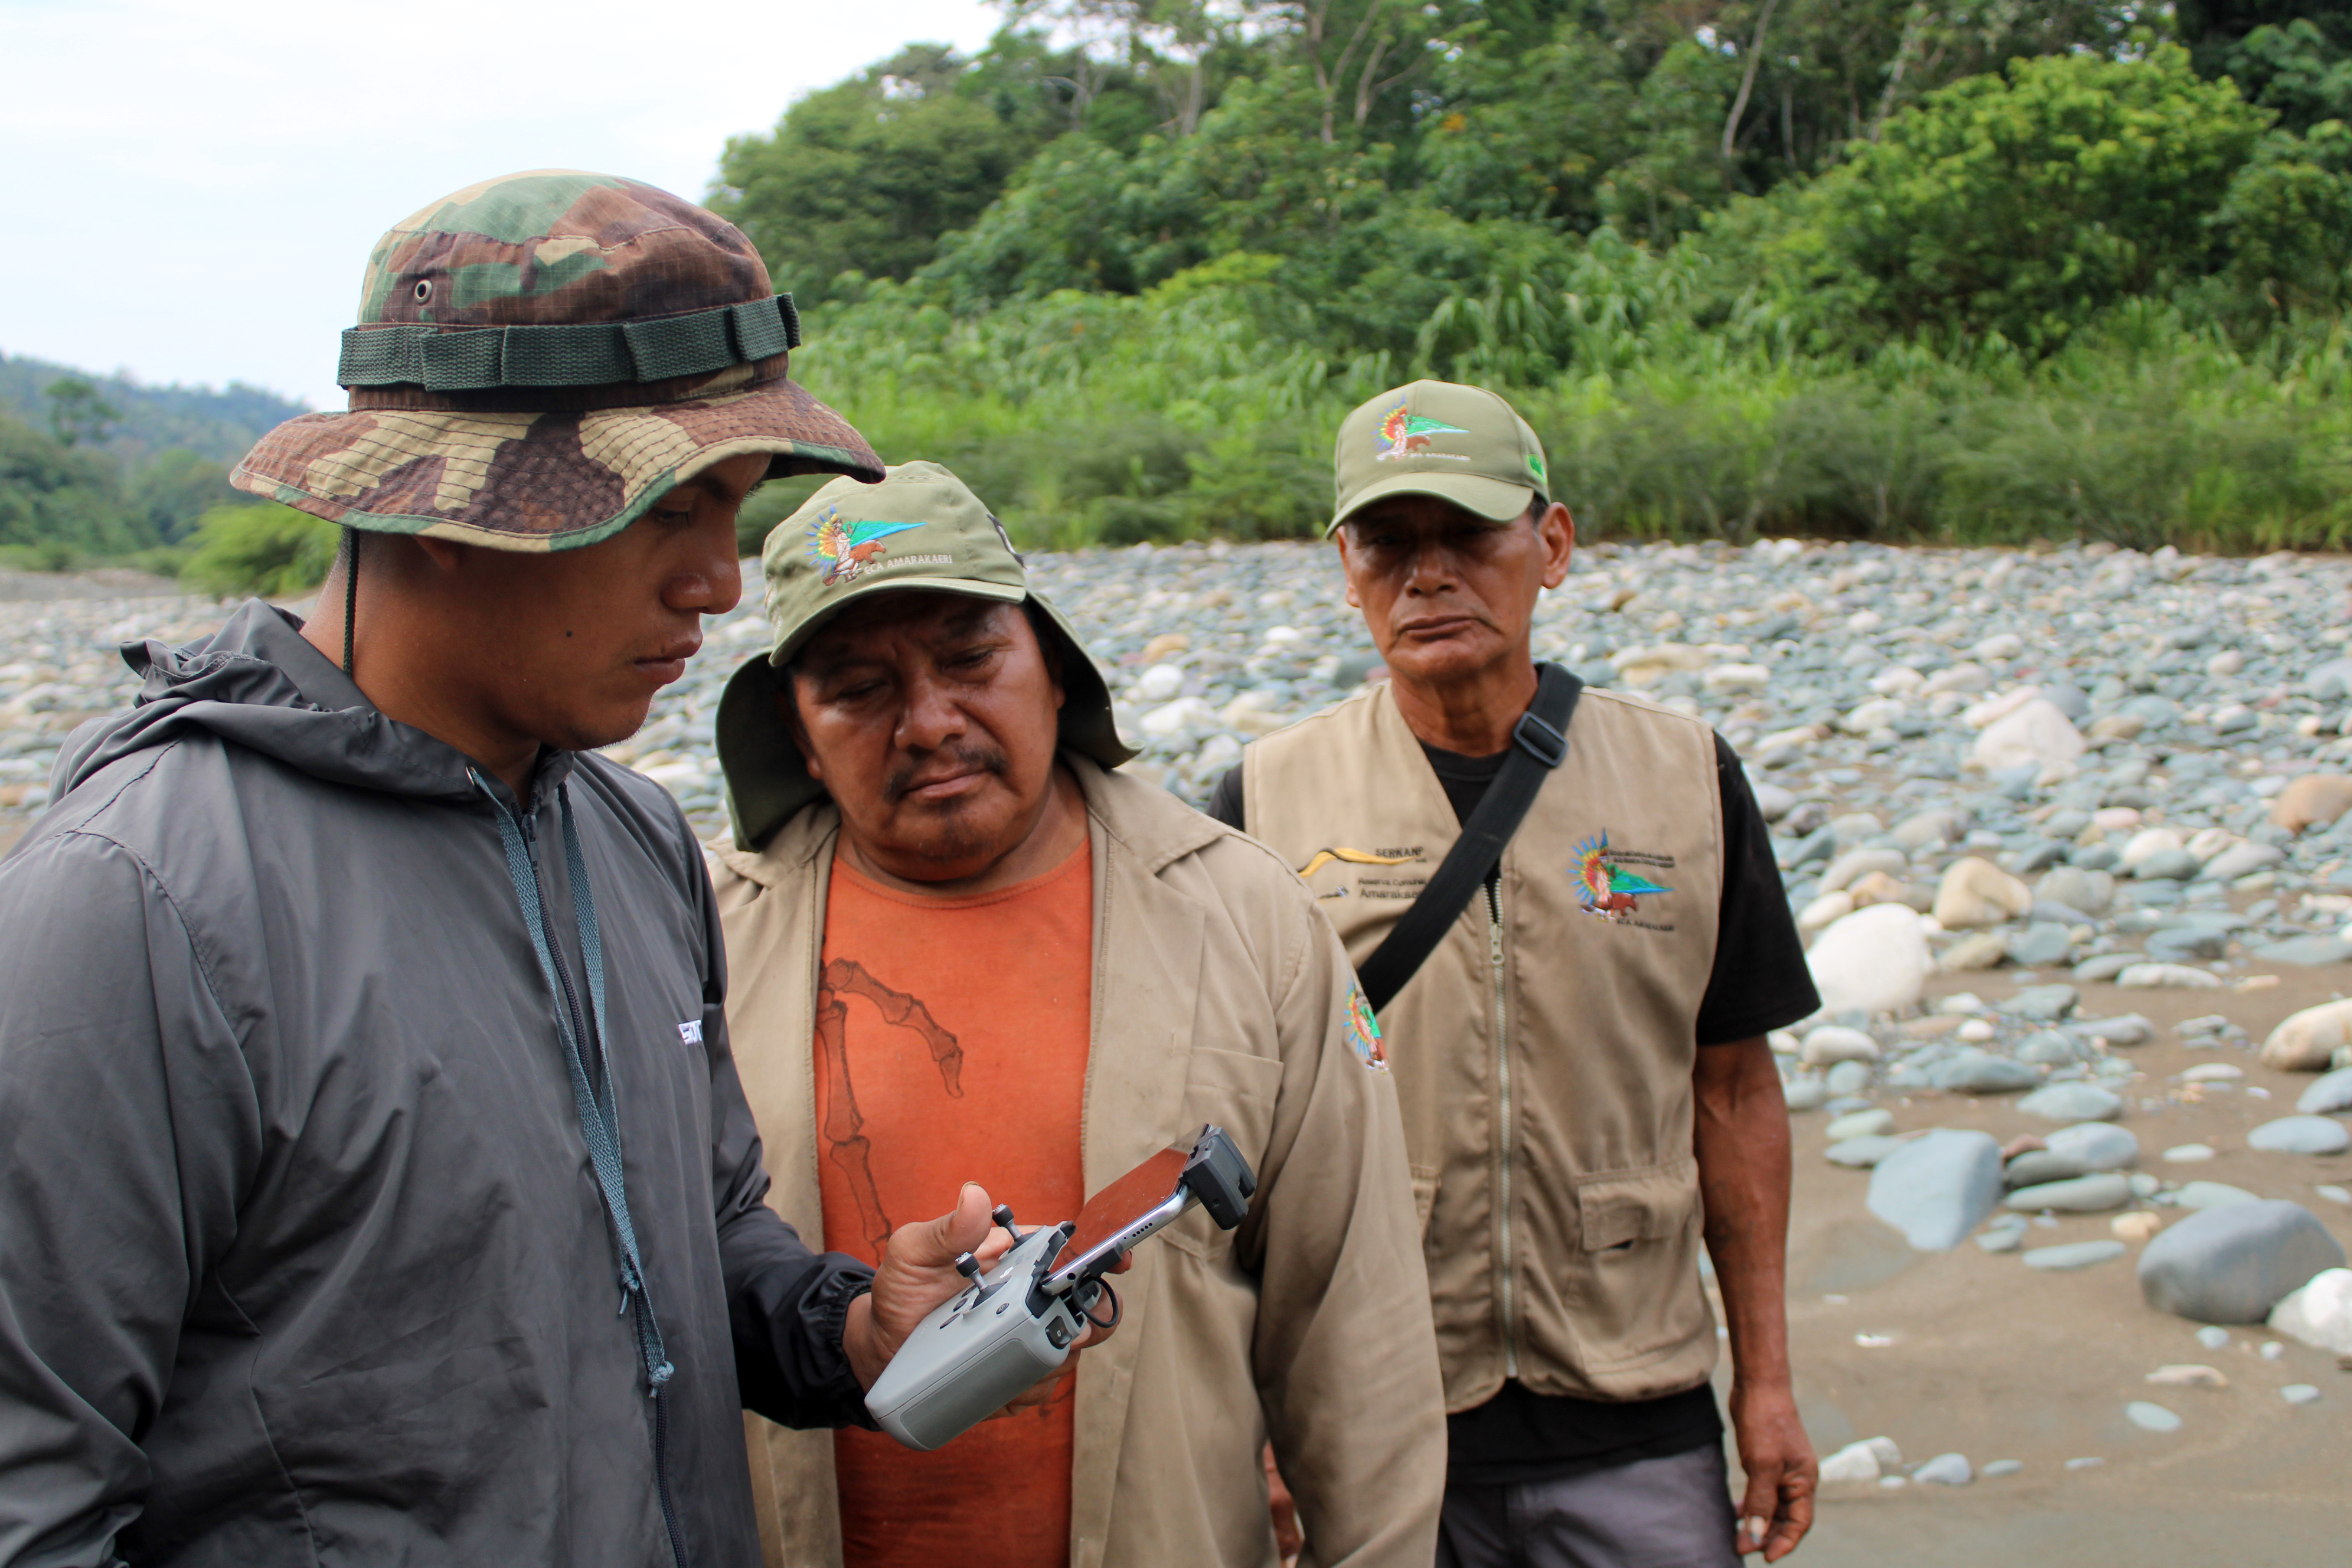 El patrullaje se realizó en el sector del río Dahuene, ubicado en el interior de Amarakaeri, colindando con la comunidad nativa Puerto Luz.